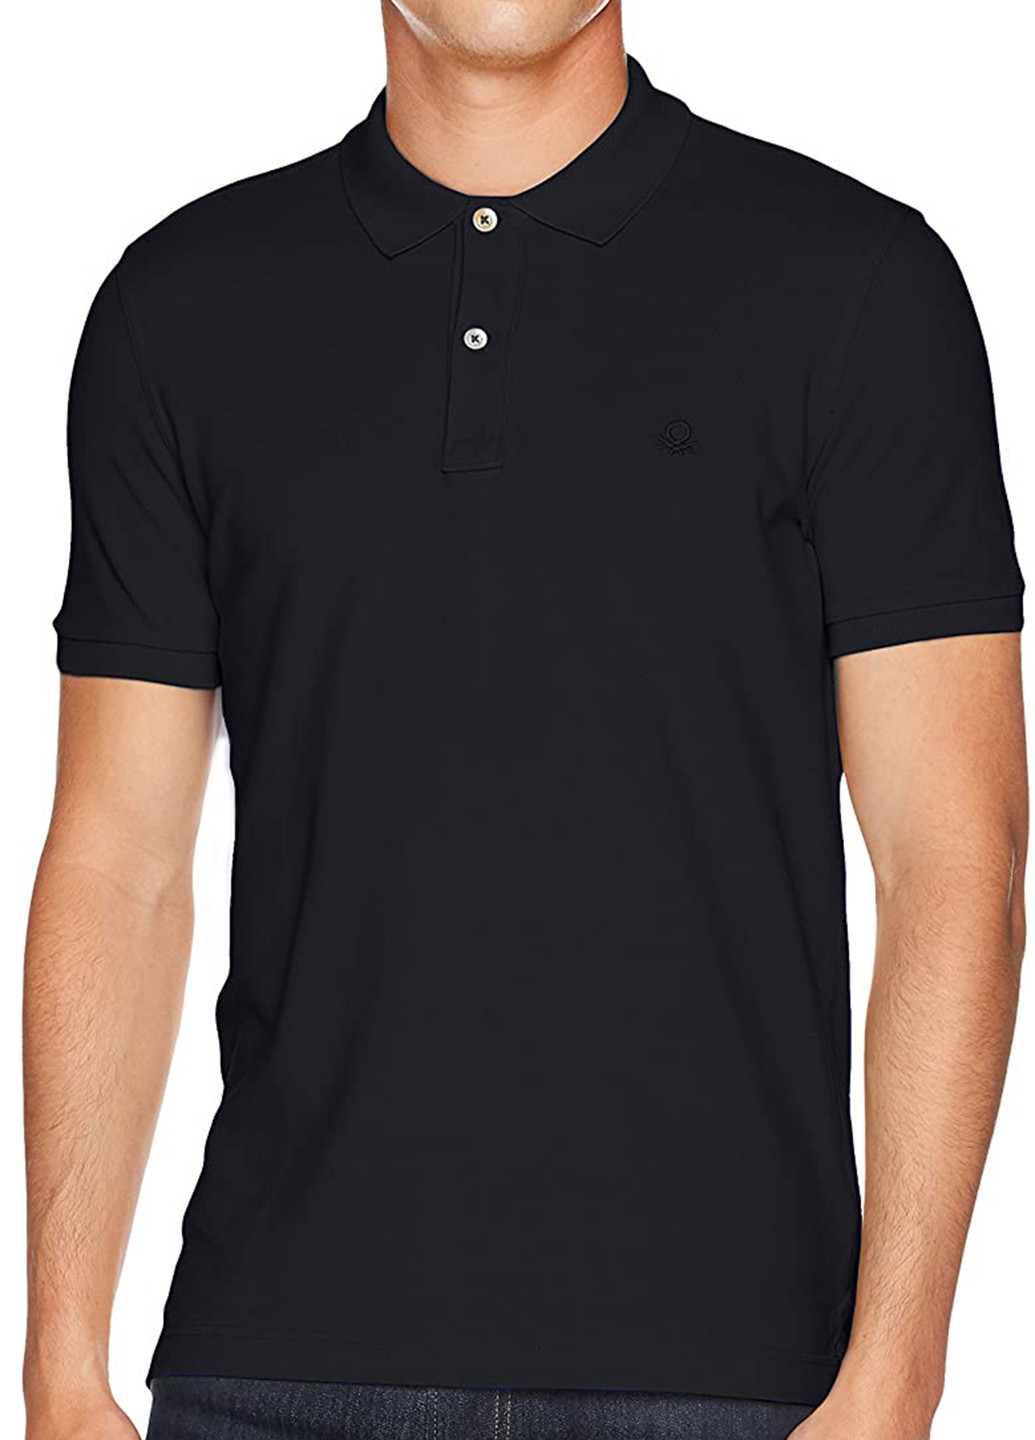 Черная футболка-поло для мужчин United Colors of Benetton однотонная